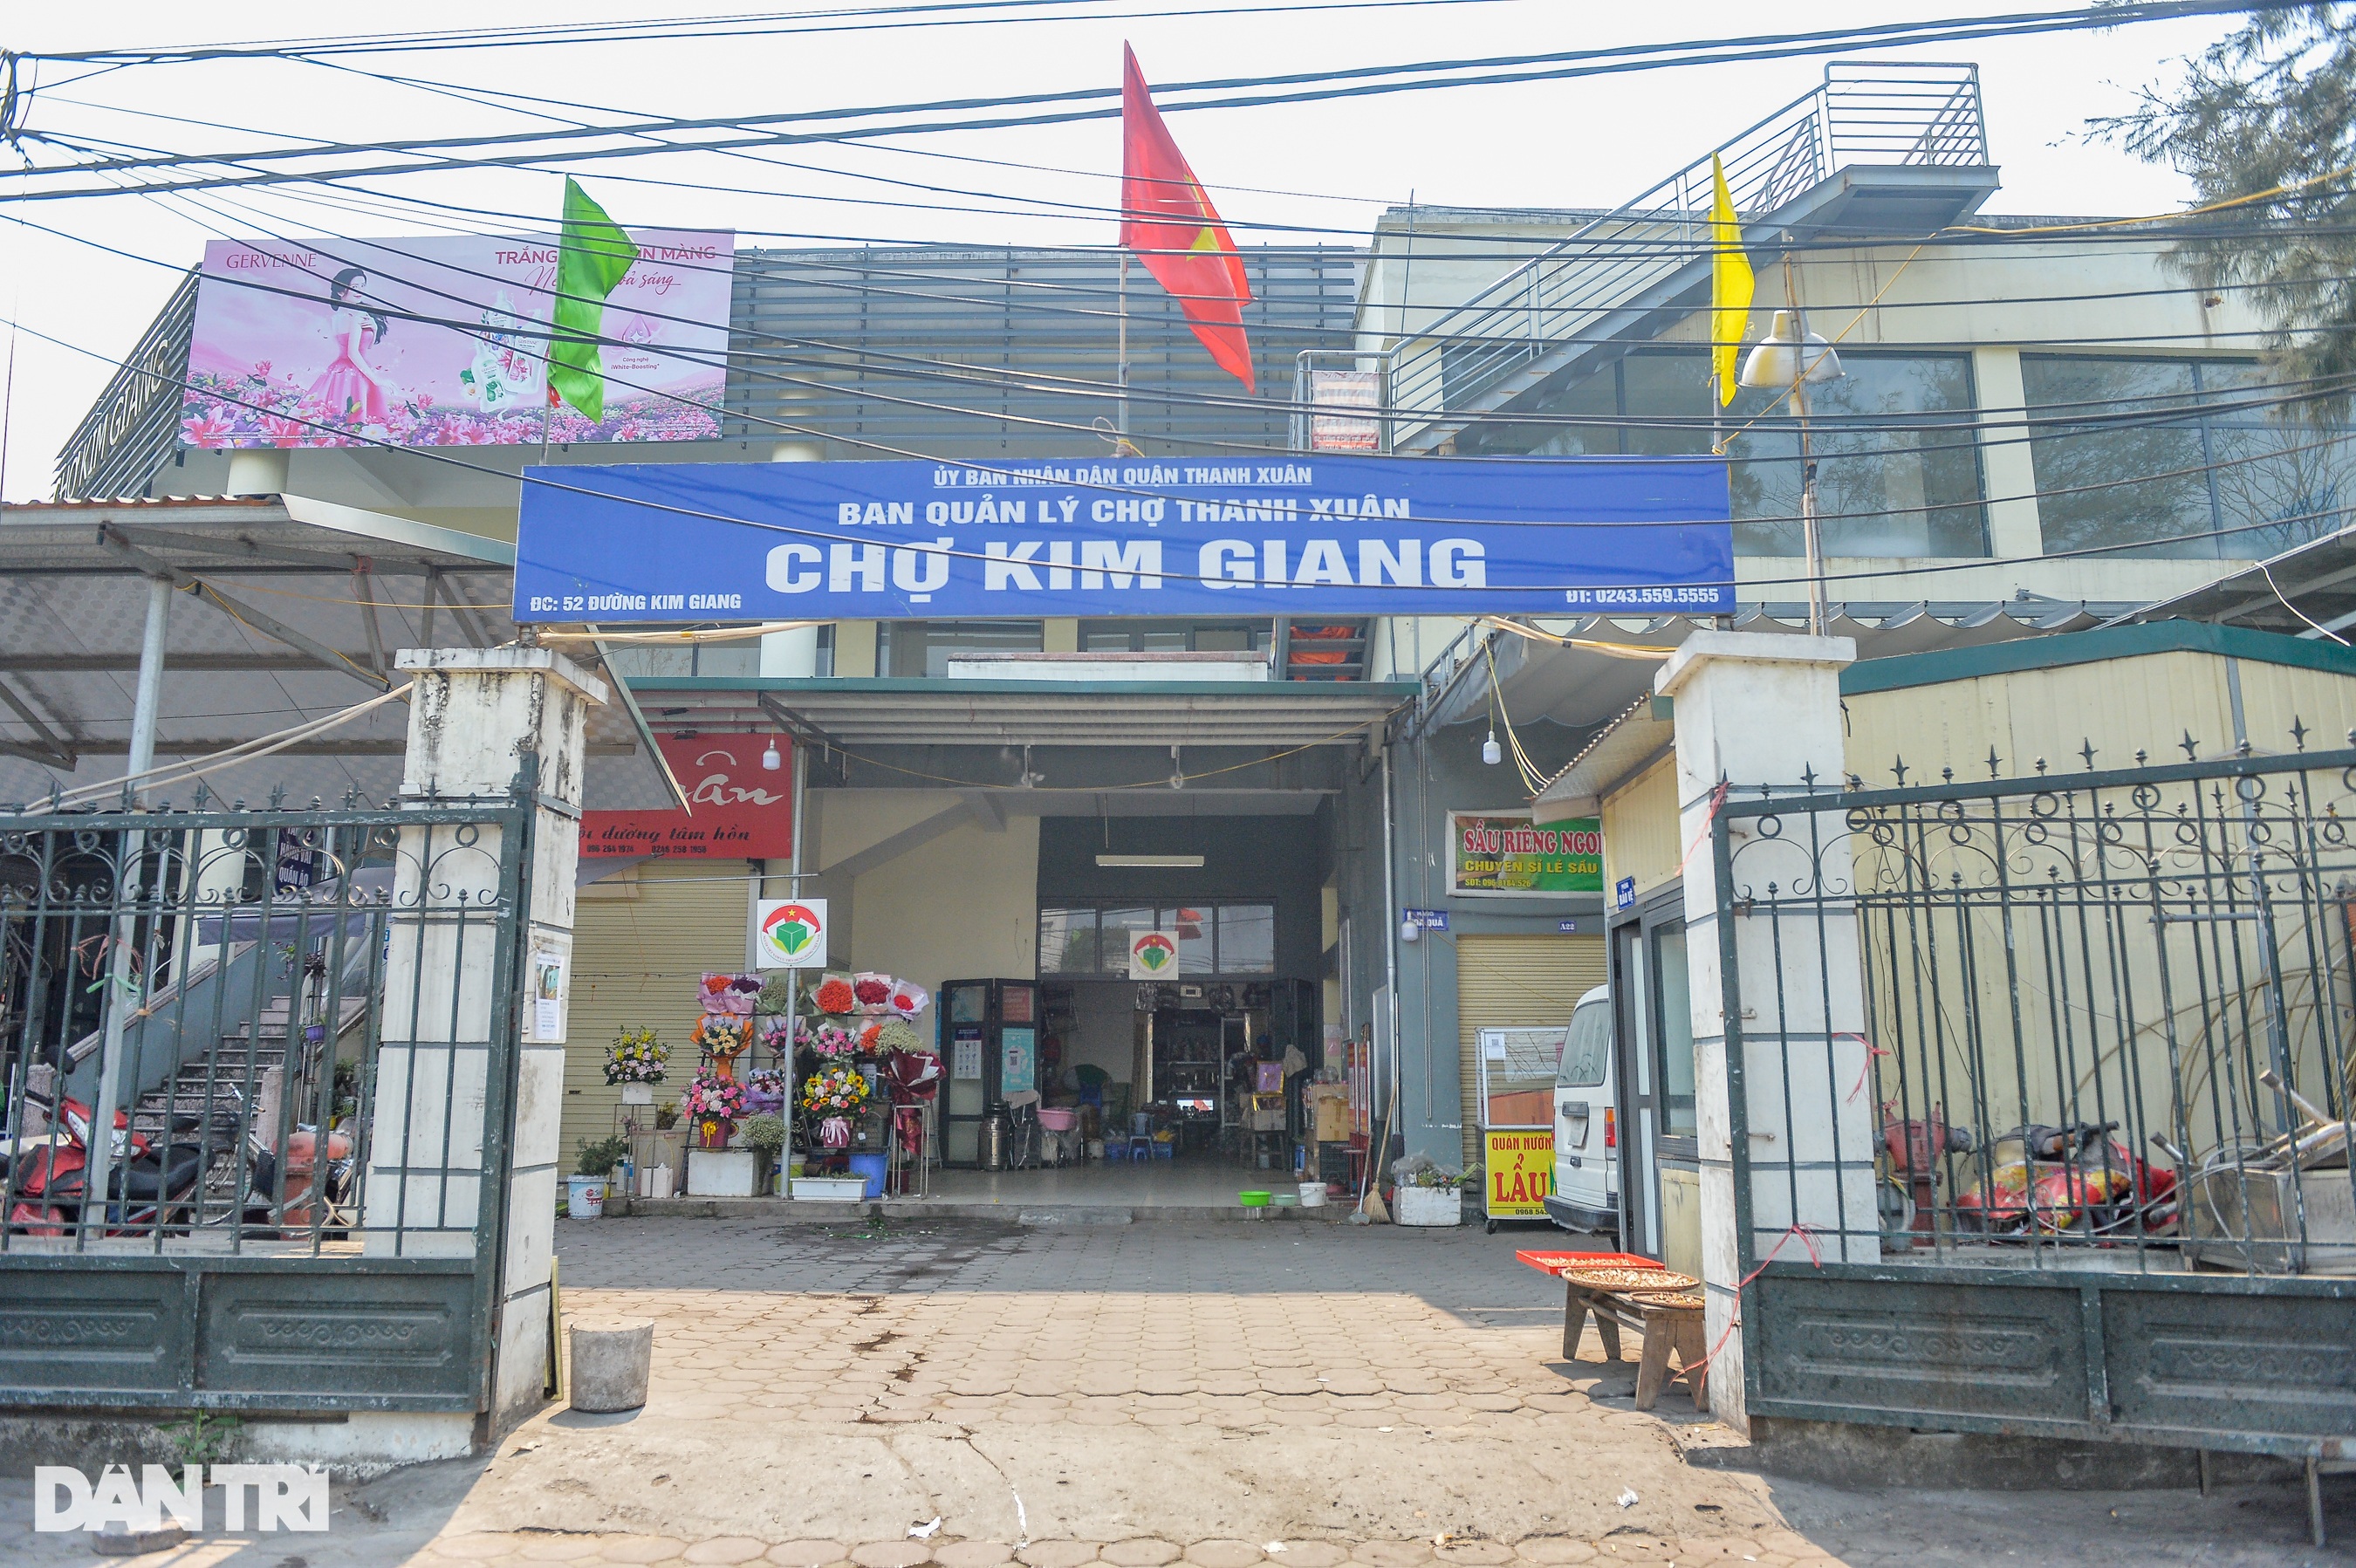 Chợ truyền thống Hà Nội đìu hiu, tiểu thương bật nhạc nhảy, ngủ xuyên trưa - 6